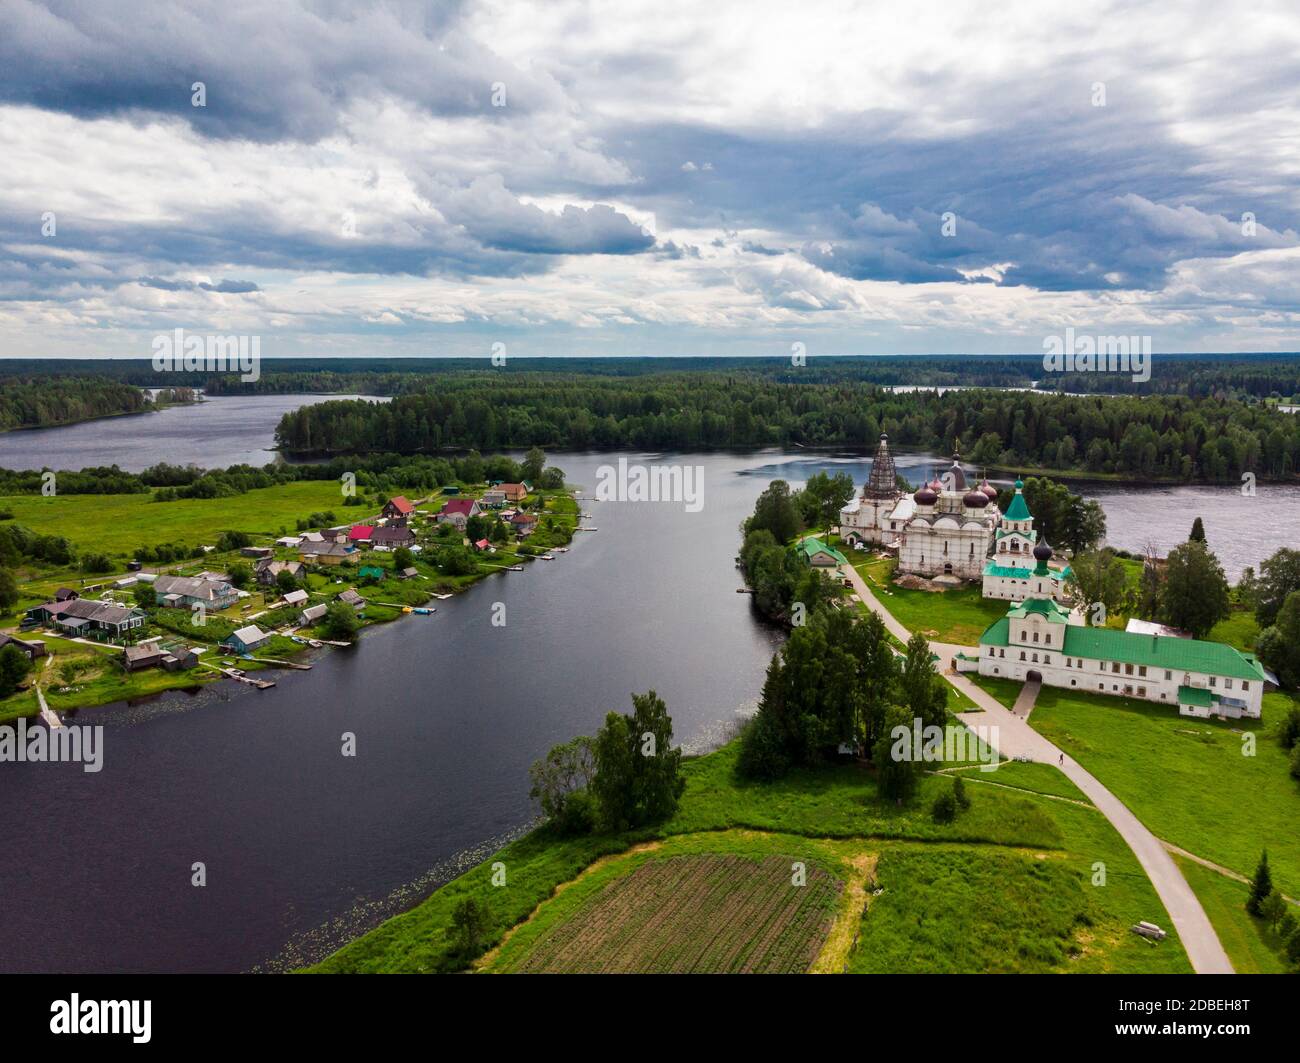 Luglio, 2020 - Anthony-Siya monastero. Monastero russo su una penisola nel mezzo di un lago. Bellissimo paesaggio con templi. Russia Foto Stock